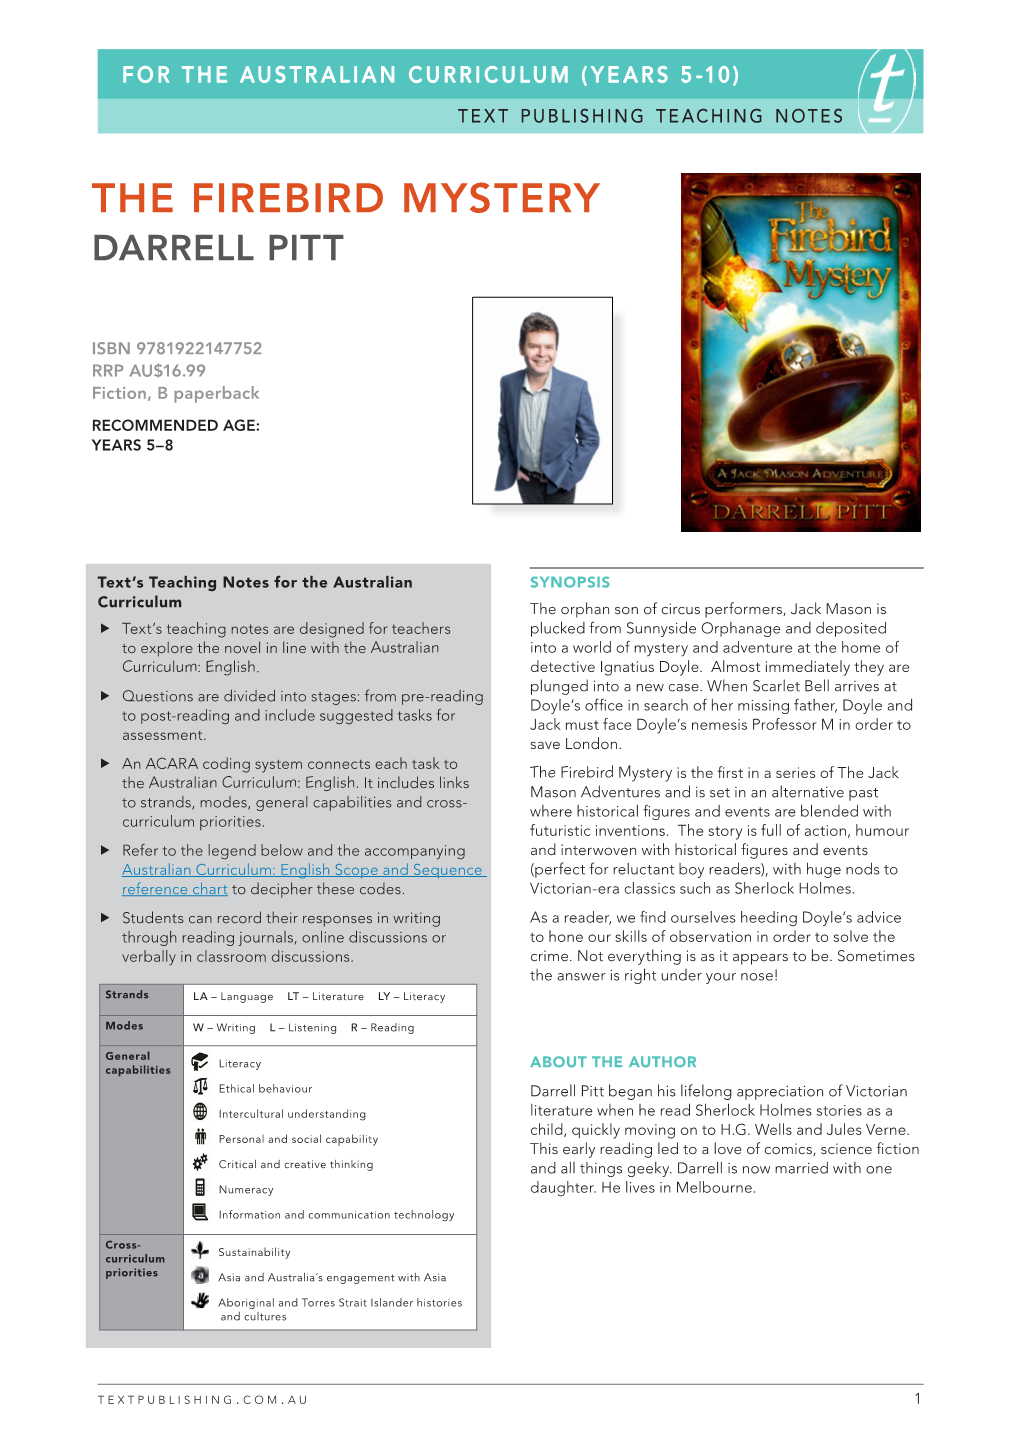 The Firebird Mystery Darrell Pitt